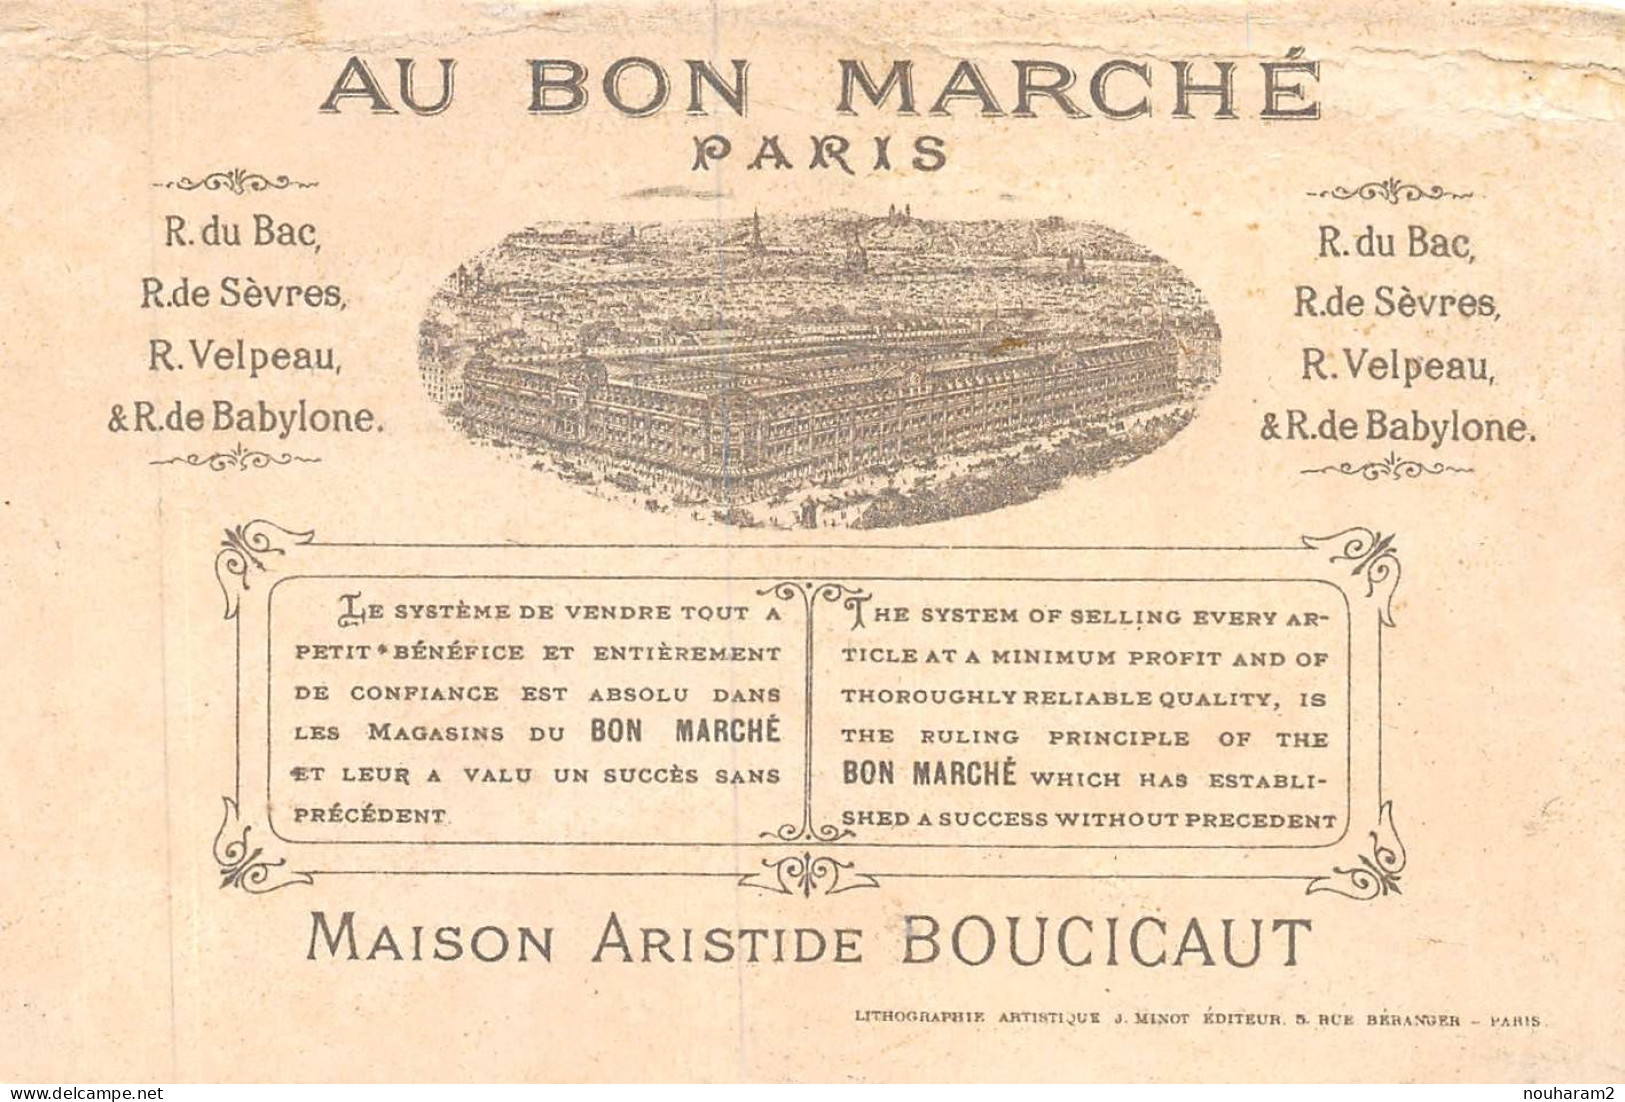 MA-2024-036. MAGASIN AU BON MARCHE PARIS. COQUILLAGE DORE - Au Bon Marché